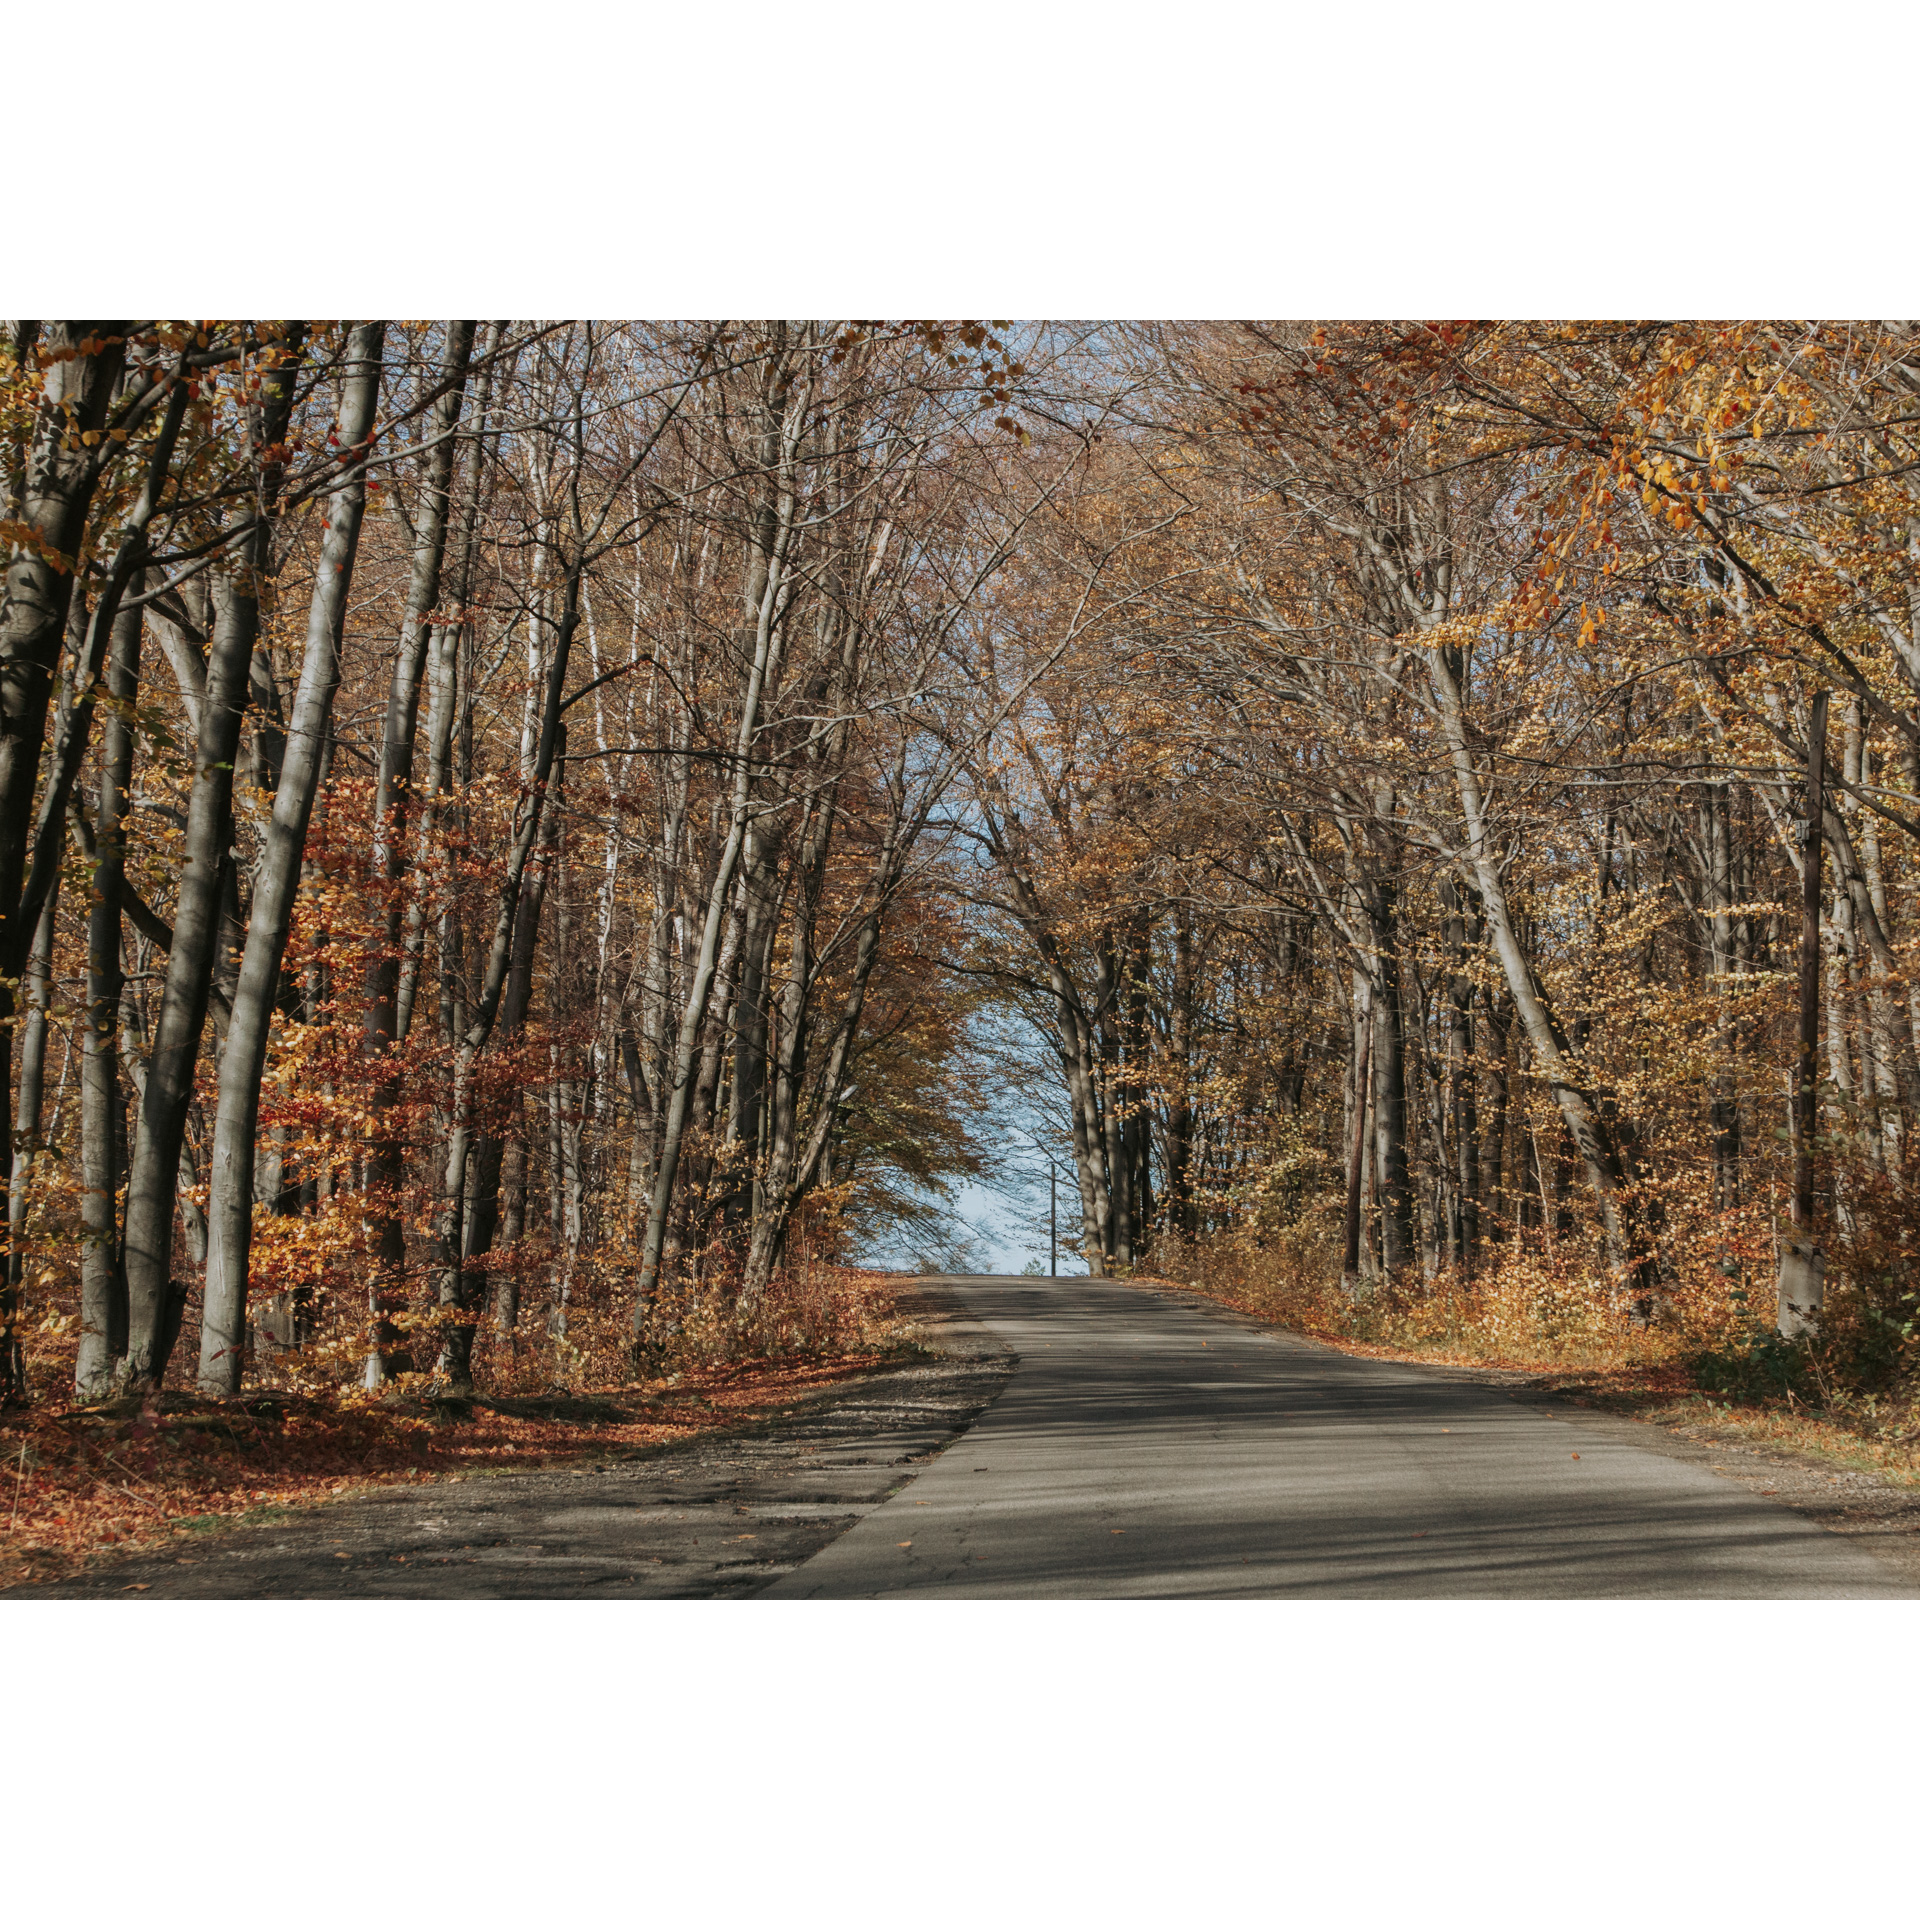 Leśna droga asfaltowa prowadząca w górę wśród liściastych drzew z brązowymi liśćmi 